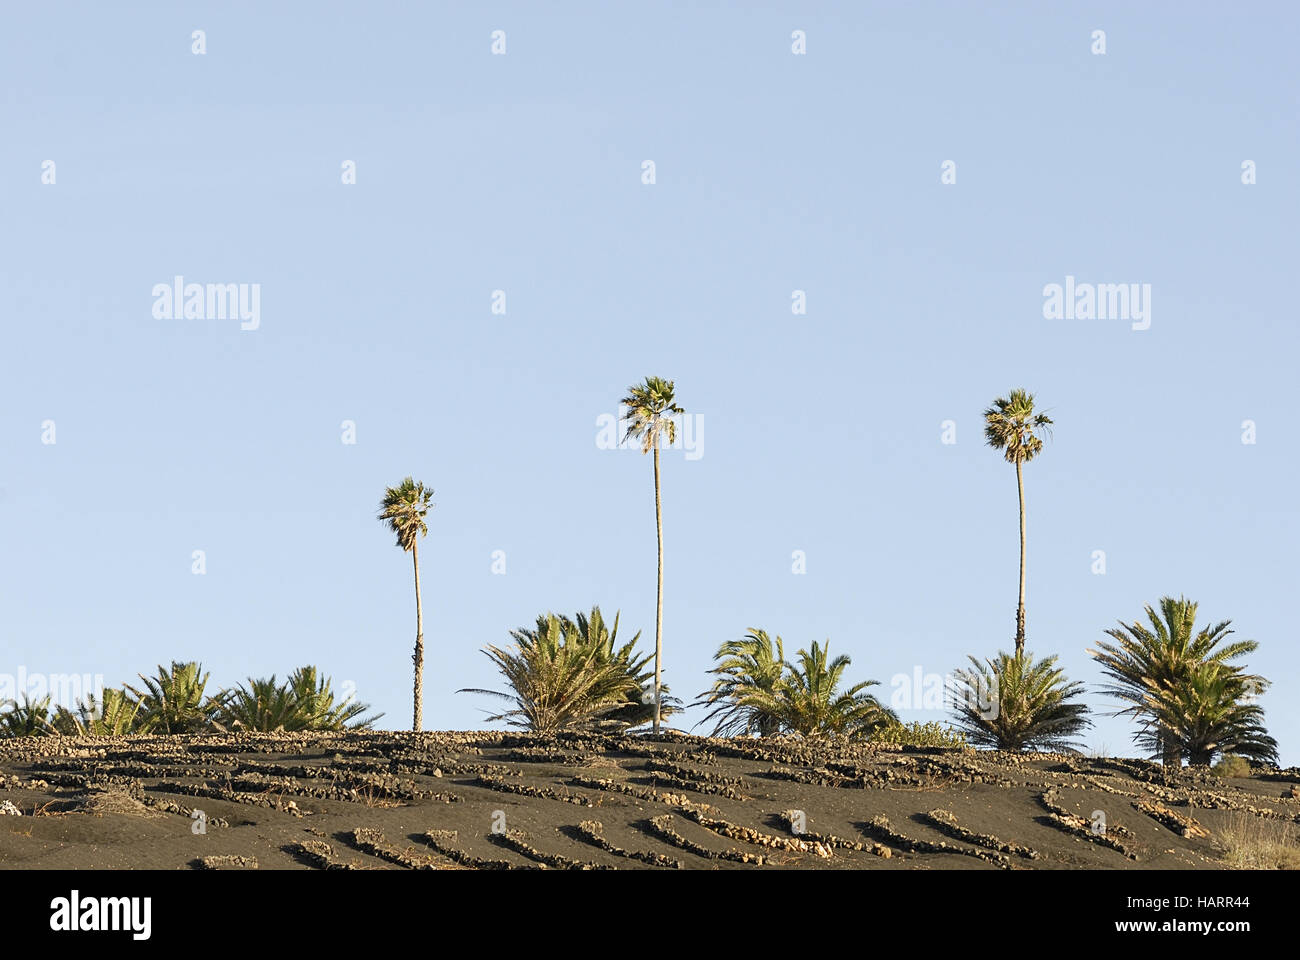 Drei palmen-tree palms Banque D'Images